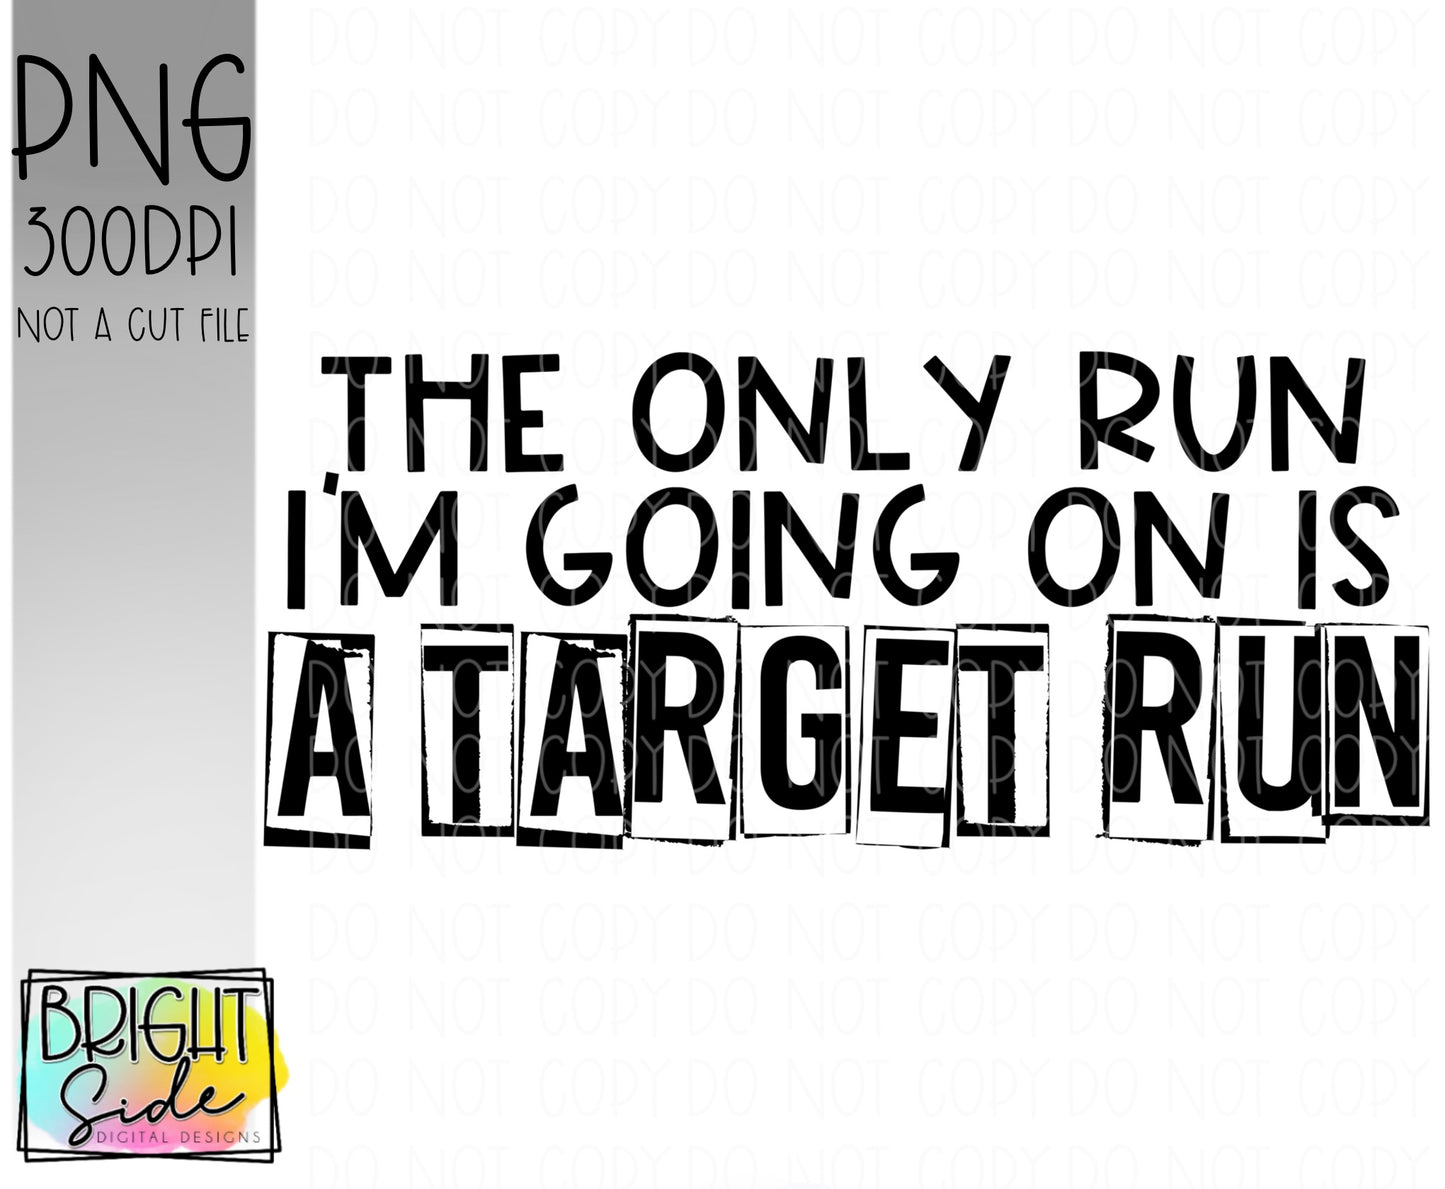 Target Run